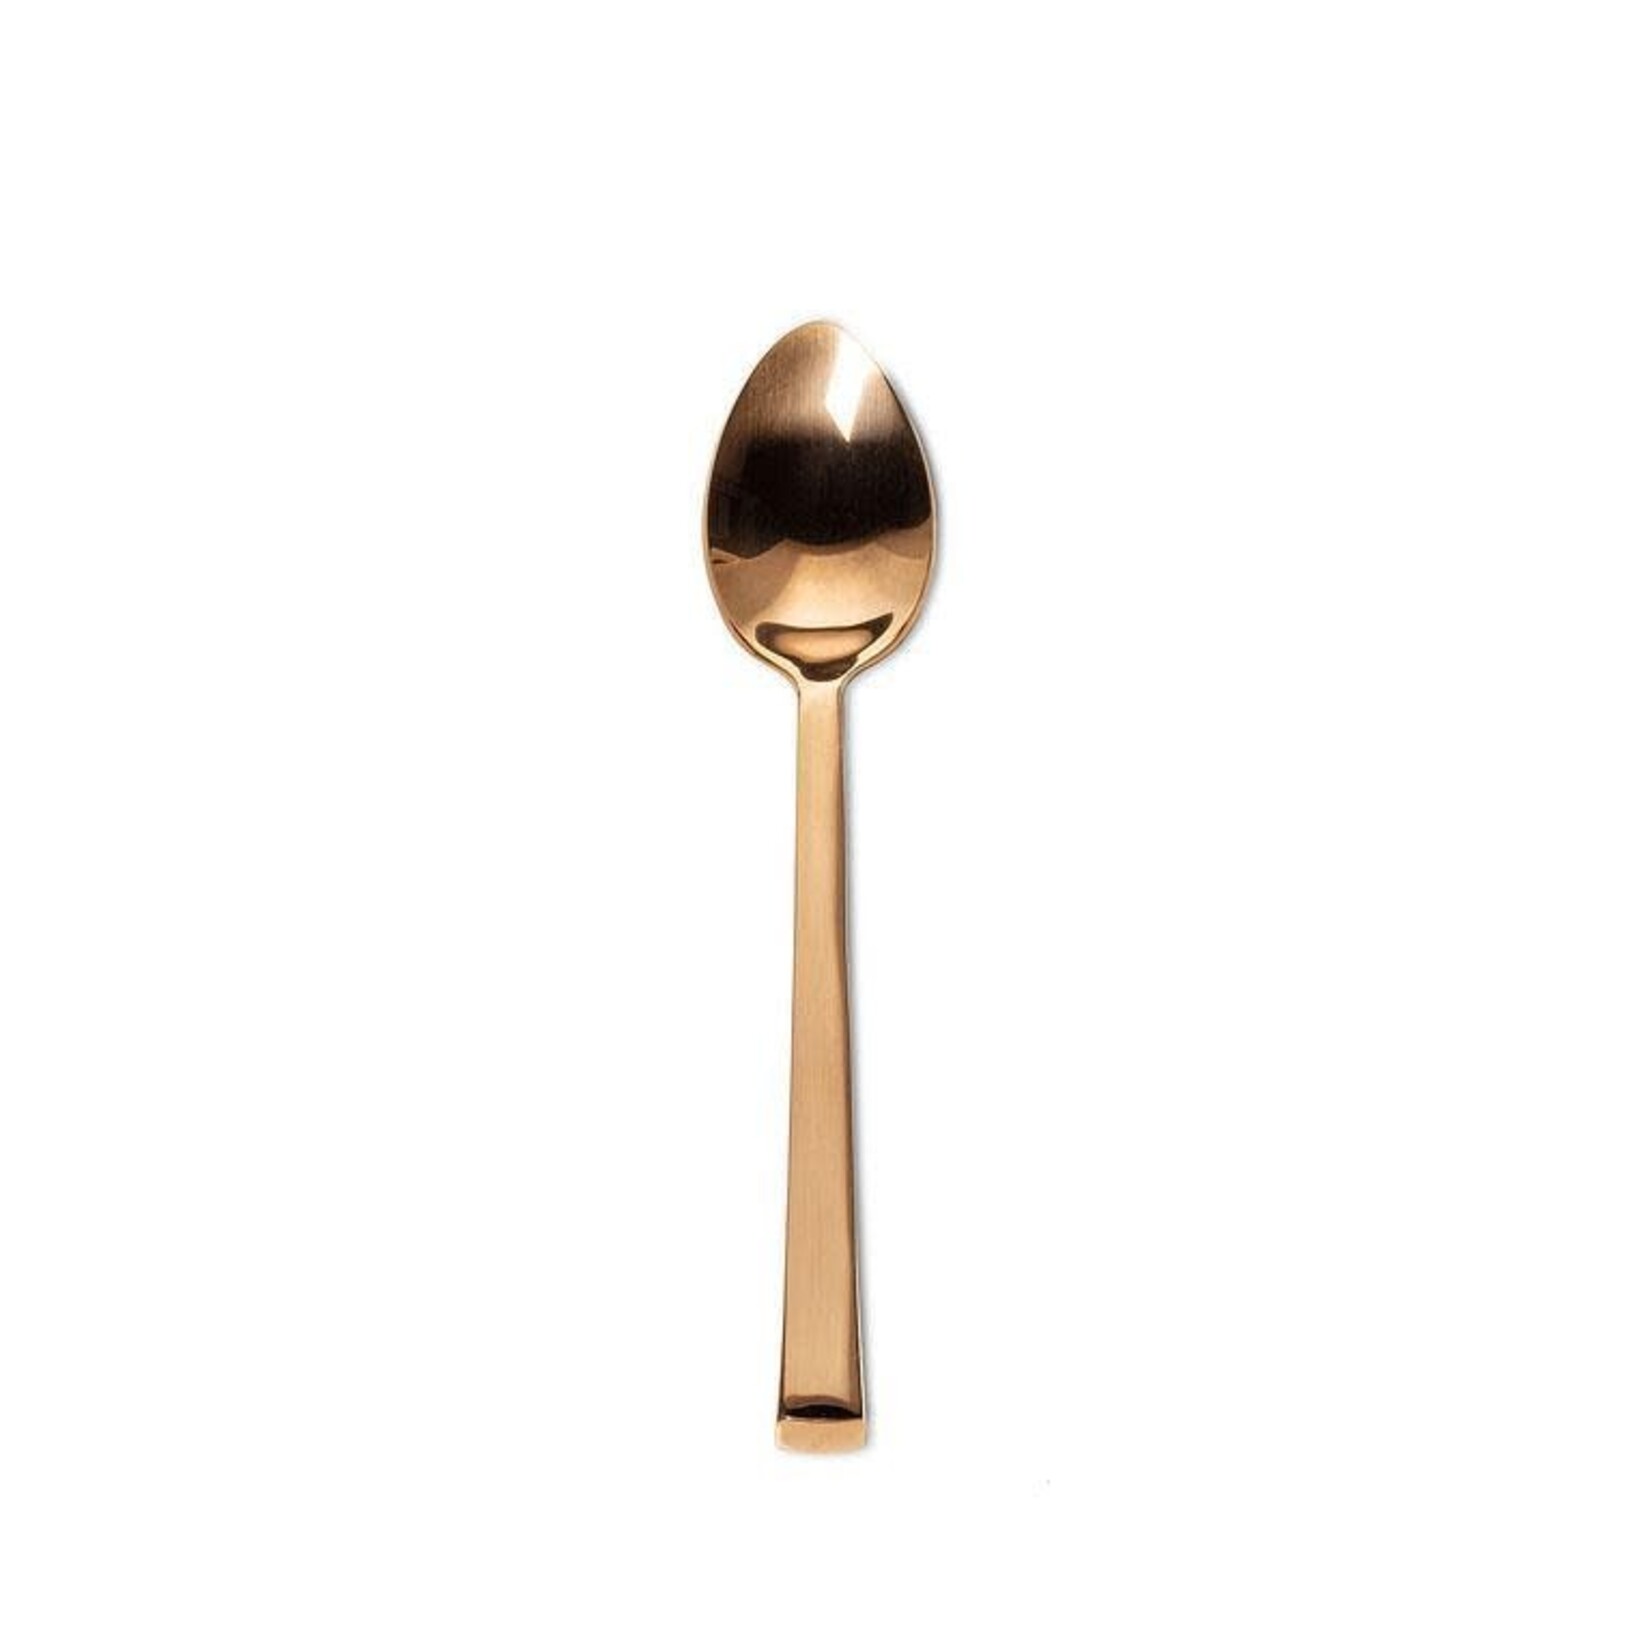 Copper Square Handle Spoon - Small